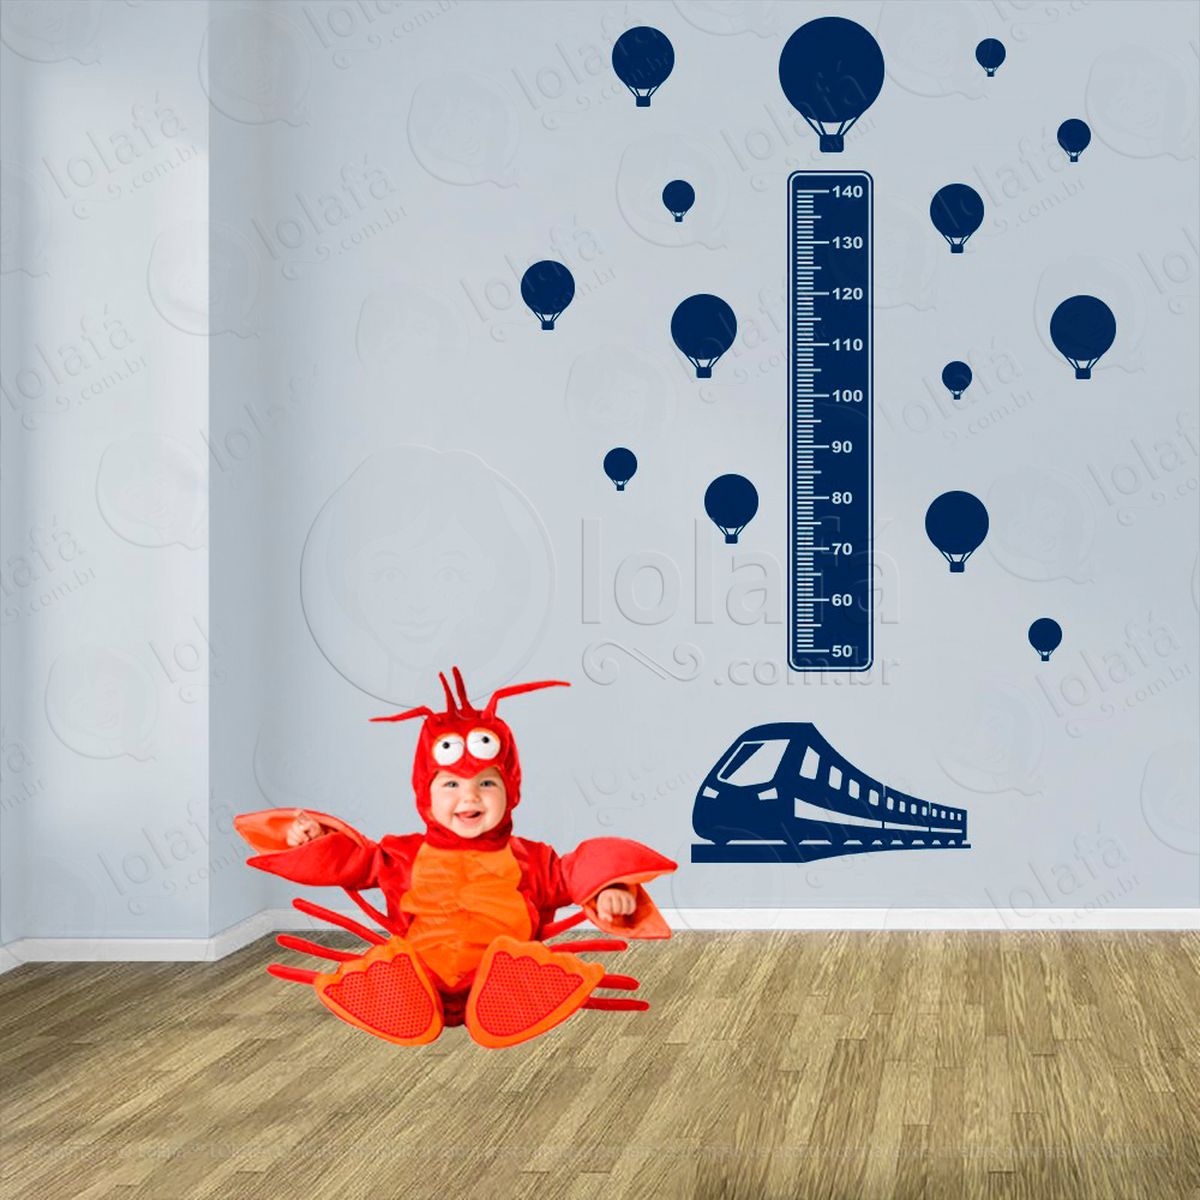 trêm e balões adesivo régua de crescimento infantil, medidor de altura para quarto, porta e parede - mod:1502